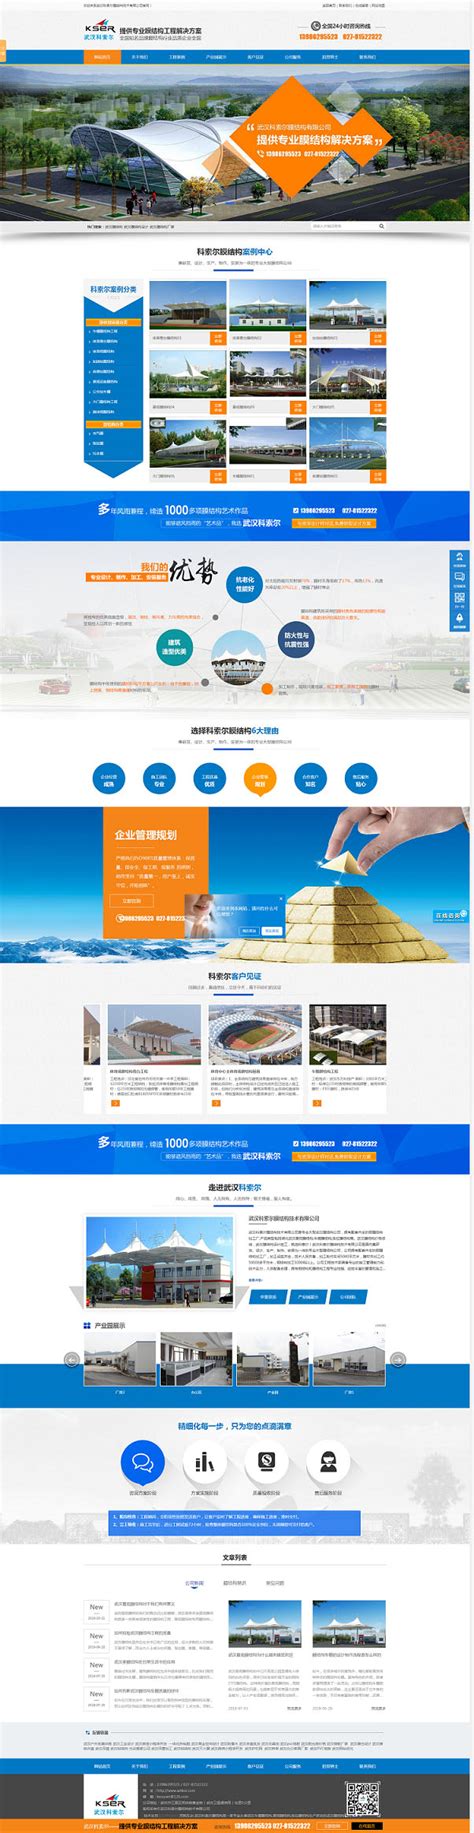 武汉网站建设方案优化